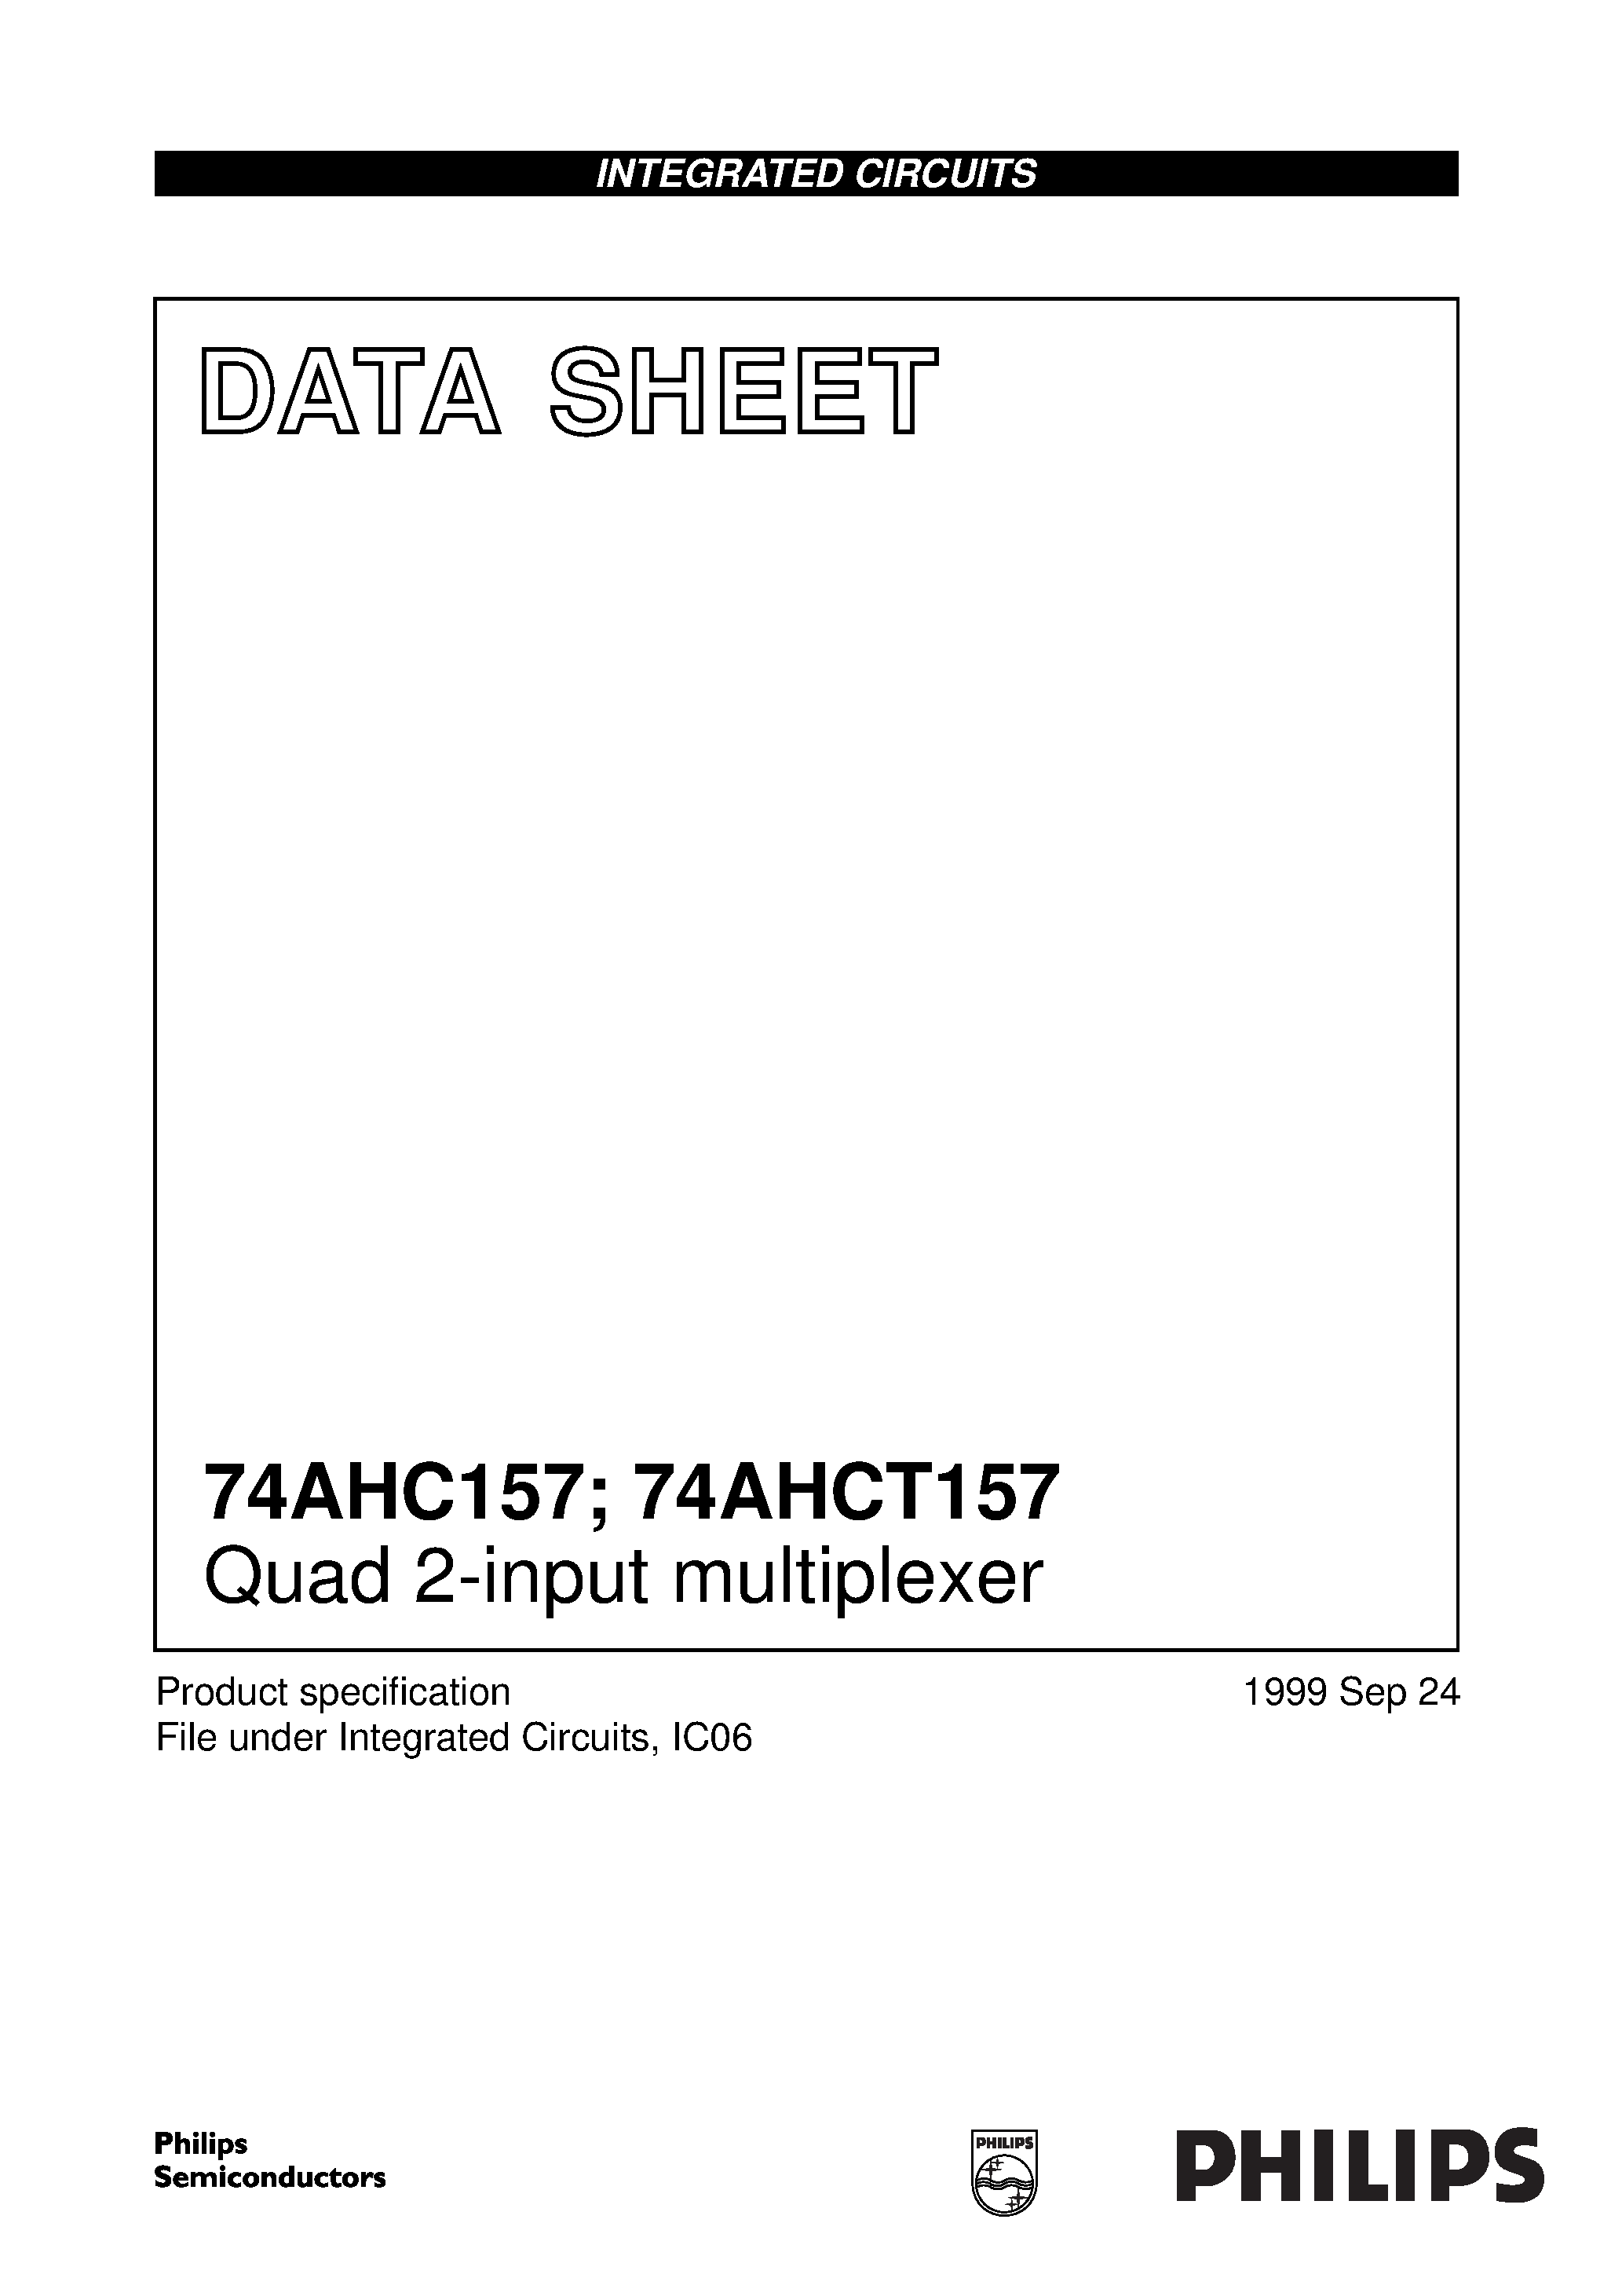 Даташит 74AHC157PW - Quad 2-input multiplexer страница 1